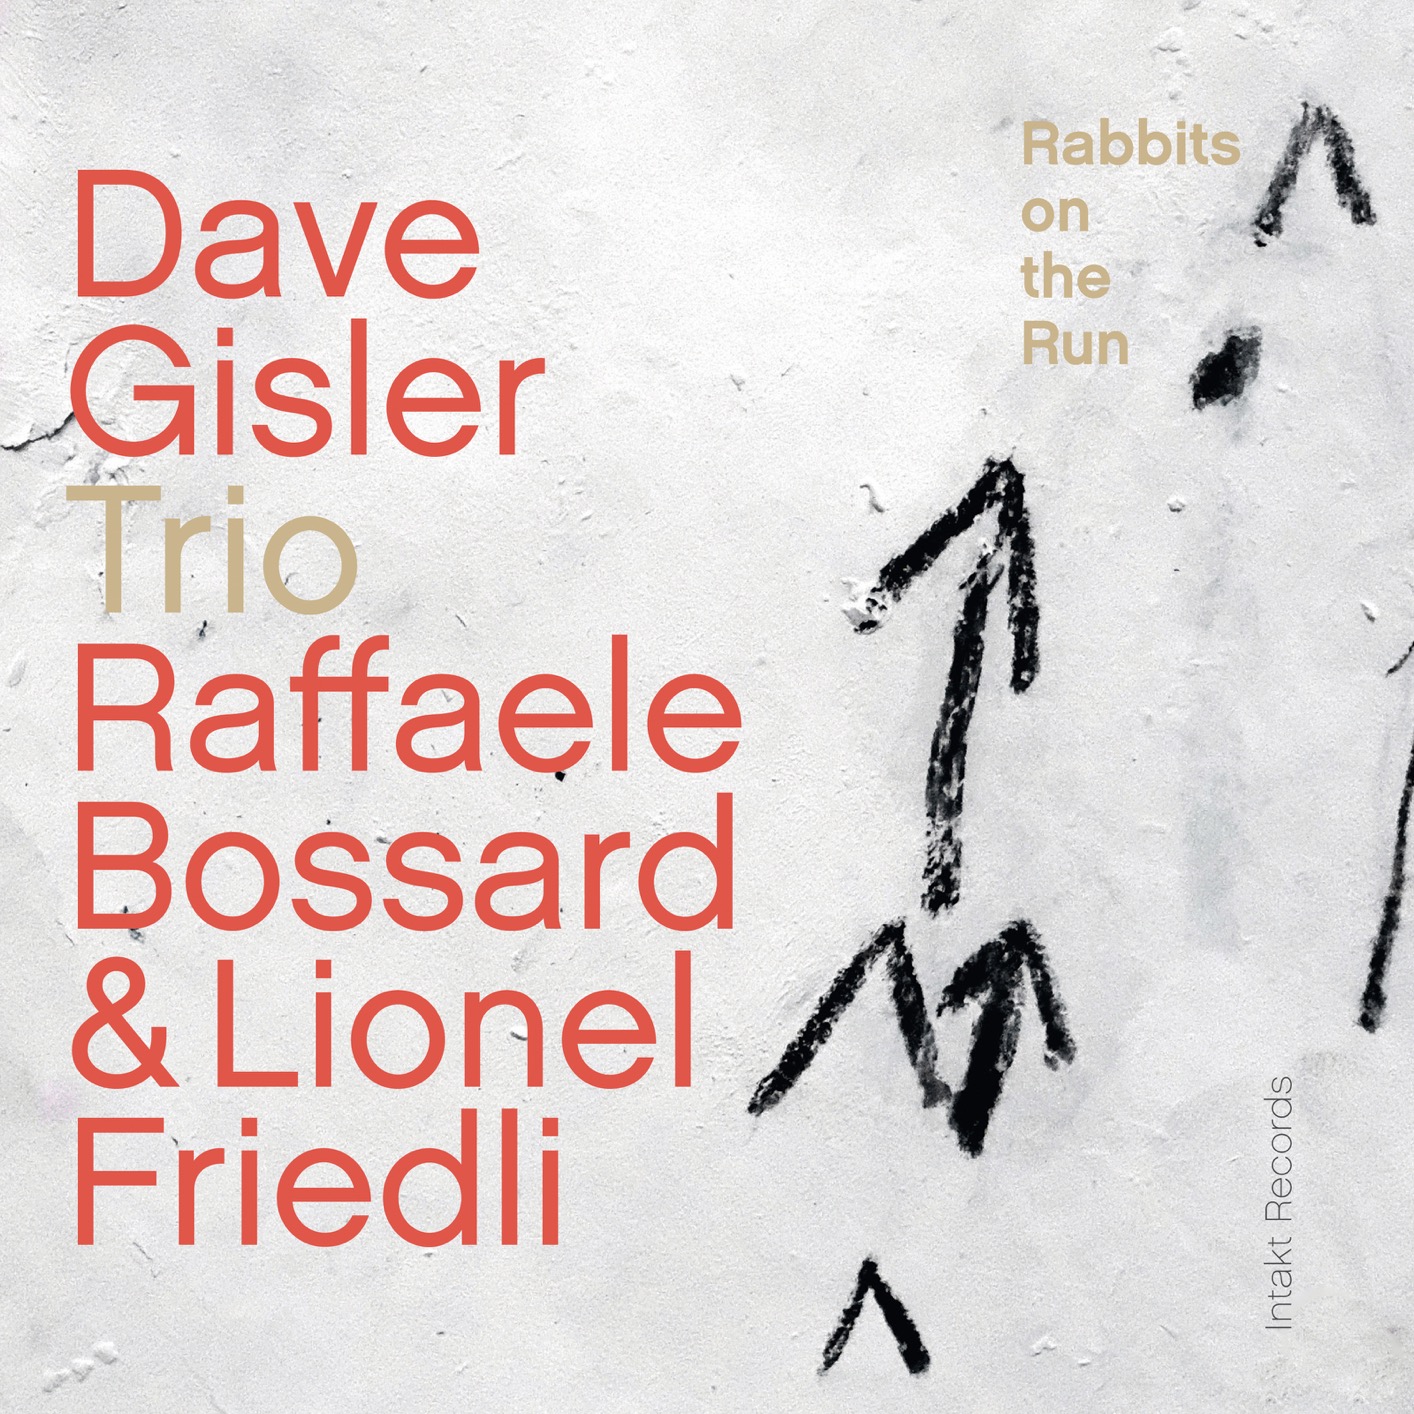 Dave Gisler Trio - Rabbits on the Run (2018) [FLAC 24bit/88,2kHz]